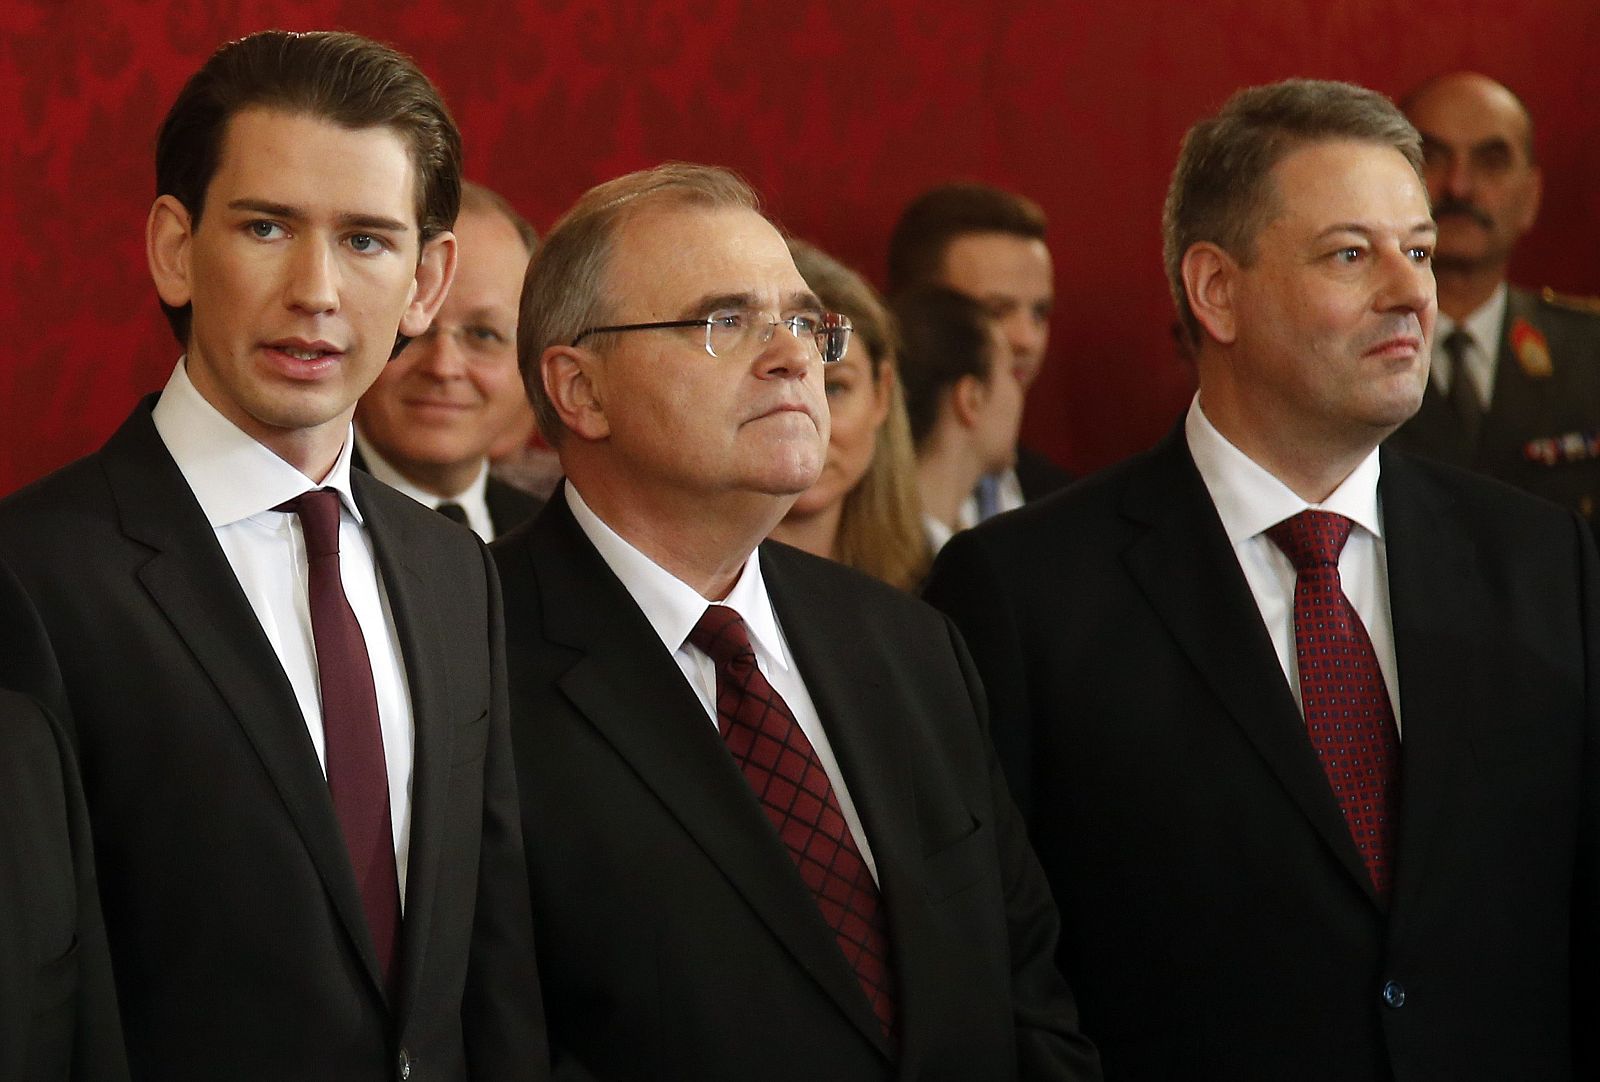 El nuevo ministro de Exteriores de Austria, Sebastian Kurz (izquierda), junto a otros ministros del Gabinete en la jura de sus cargos en Viena